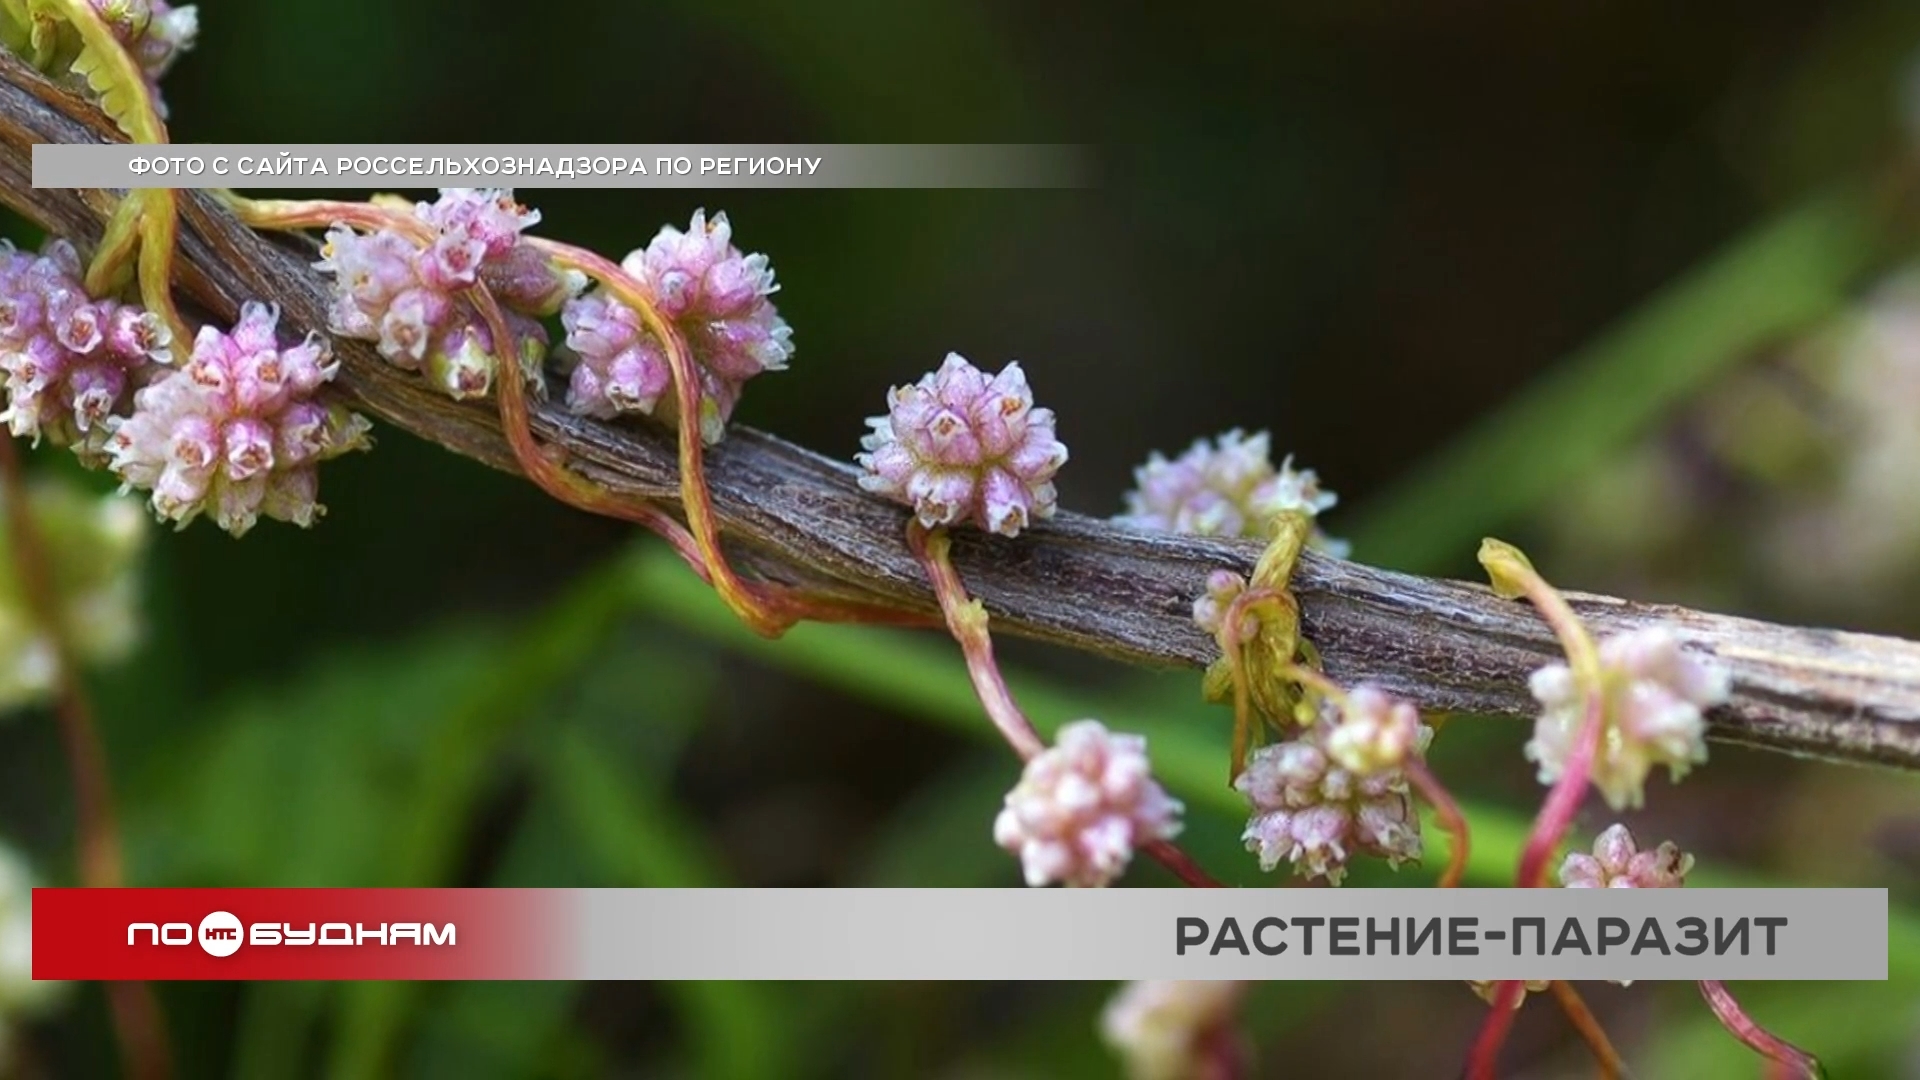 Из-за растения-паразита в Иркутском, Осинском и Усольском районах частично введён карантин